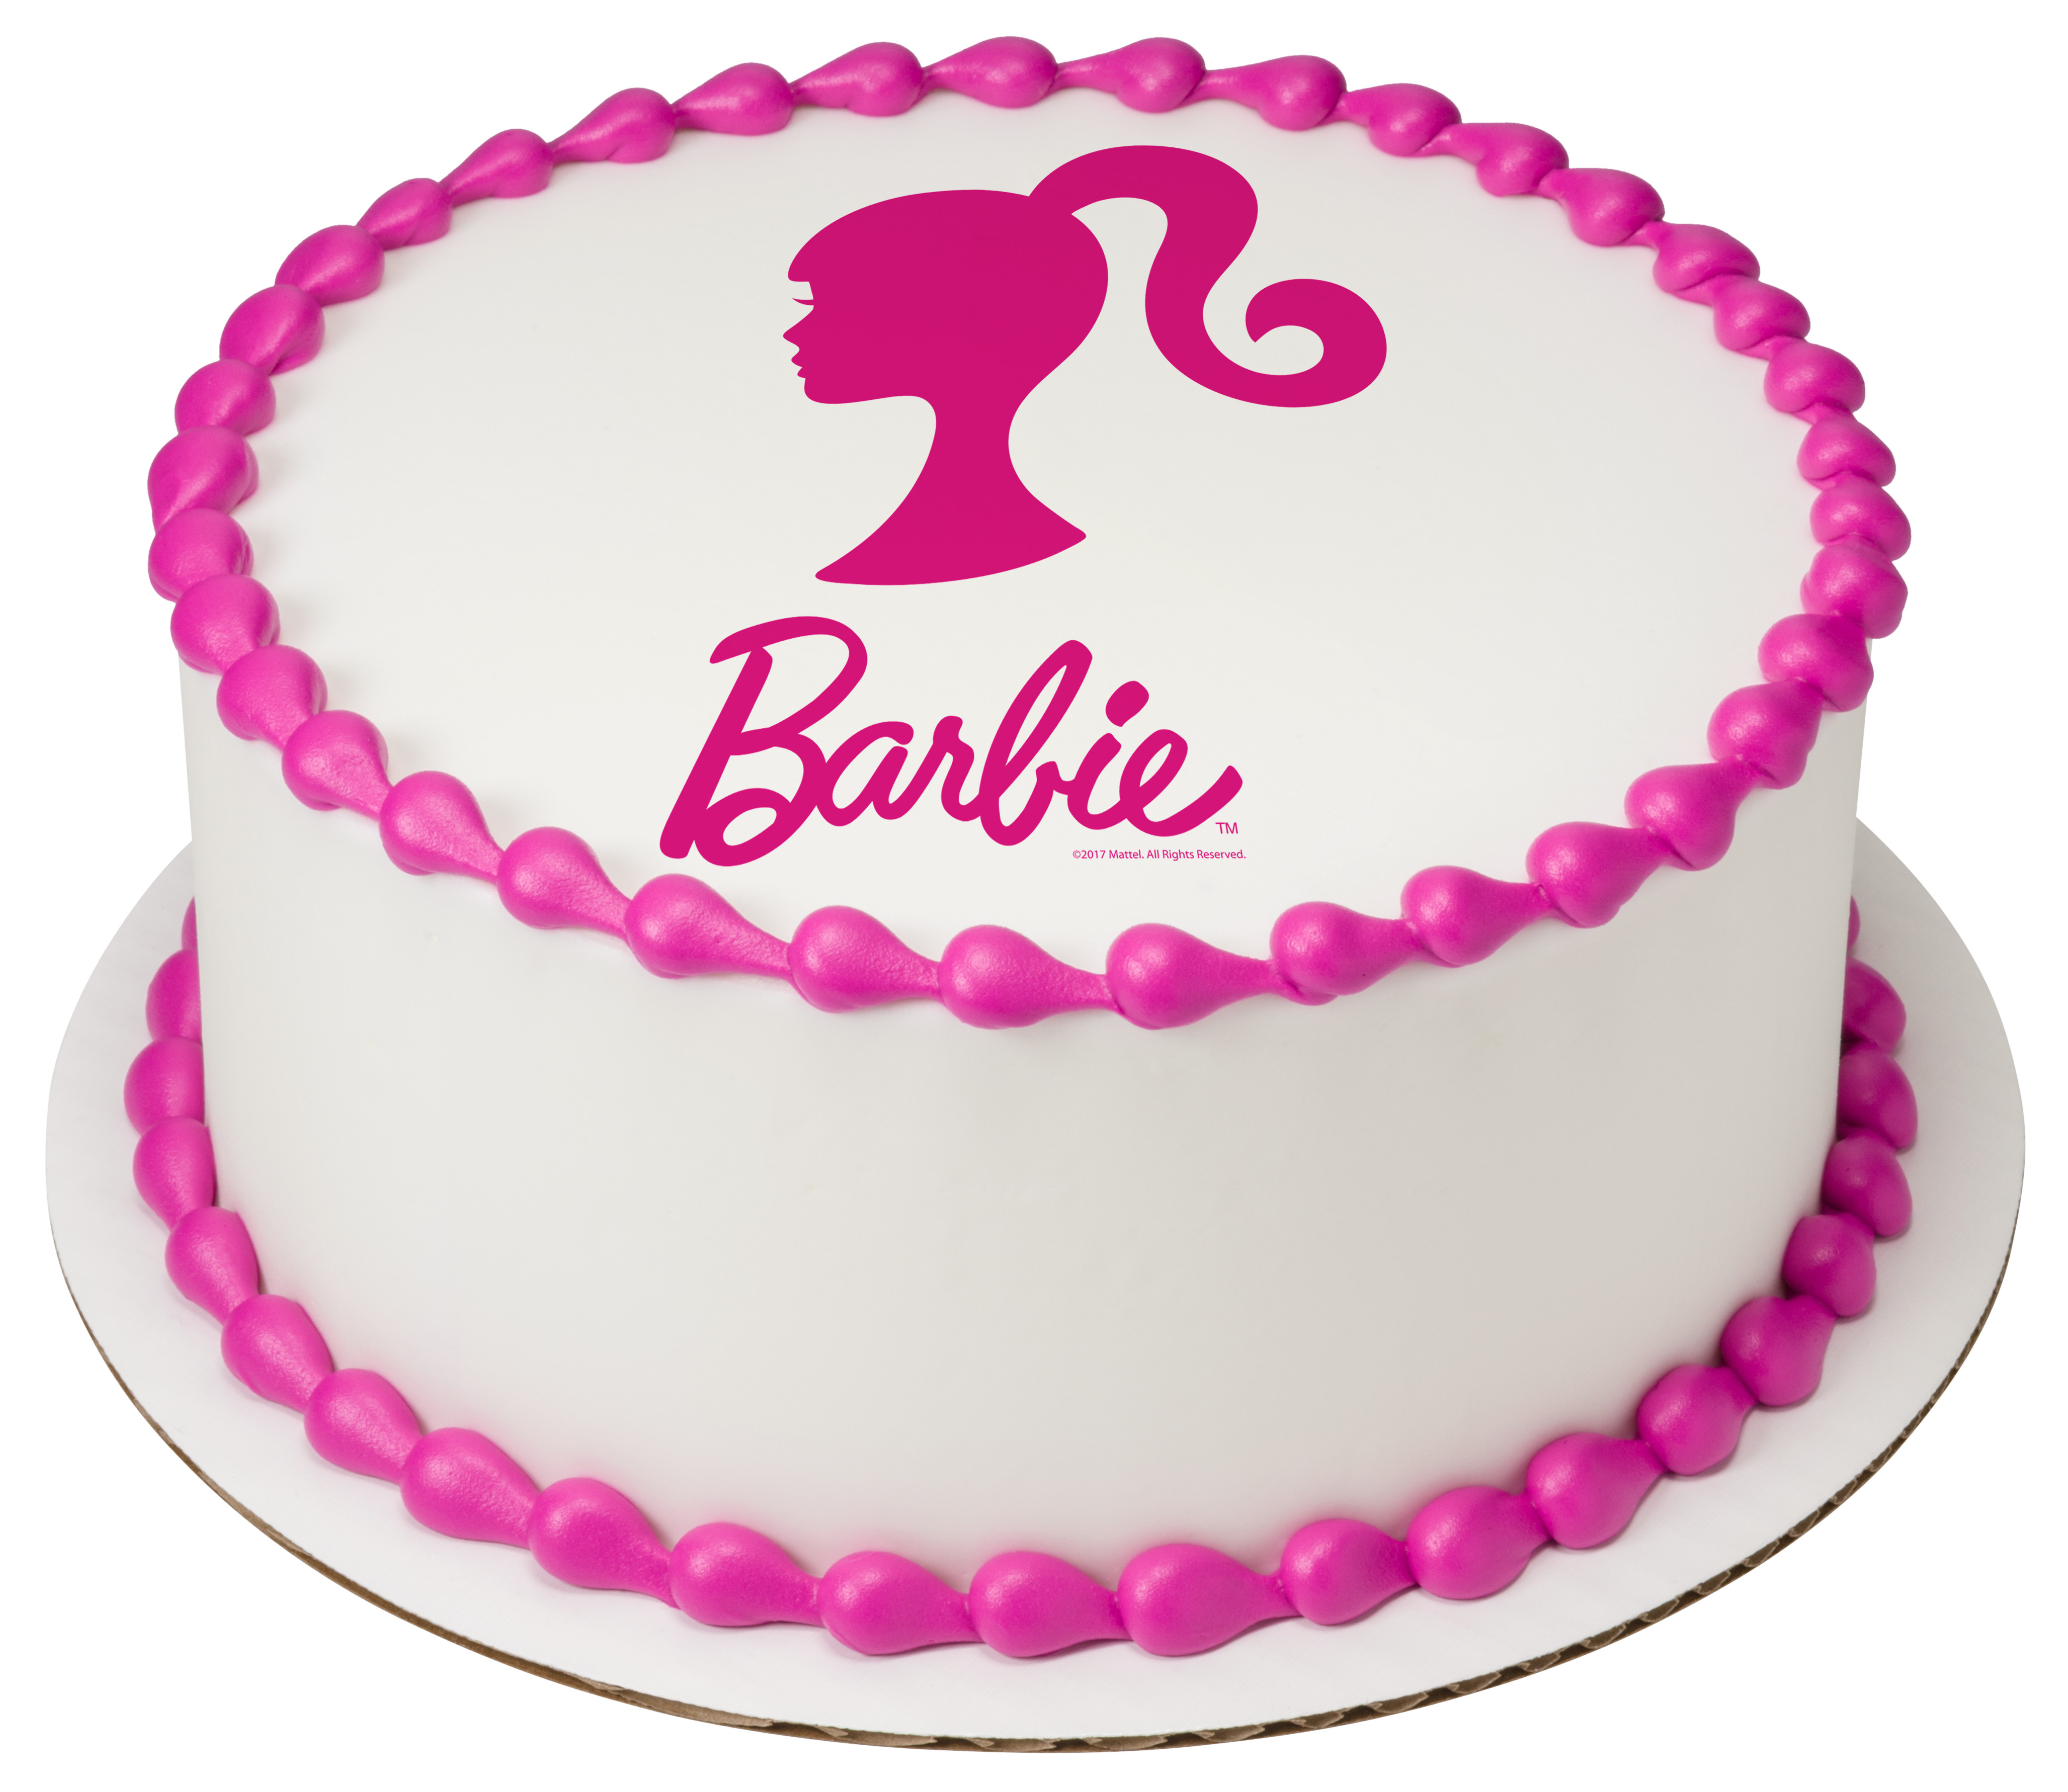 Надписи на торт печатью. Торт Барби. Торт с надписью Барби. Торт розовый Барби. Торт в стиле Барби.